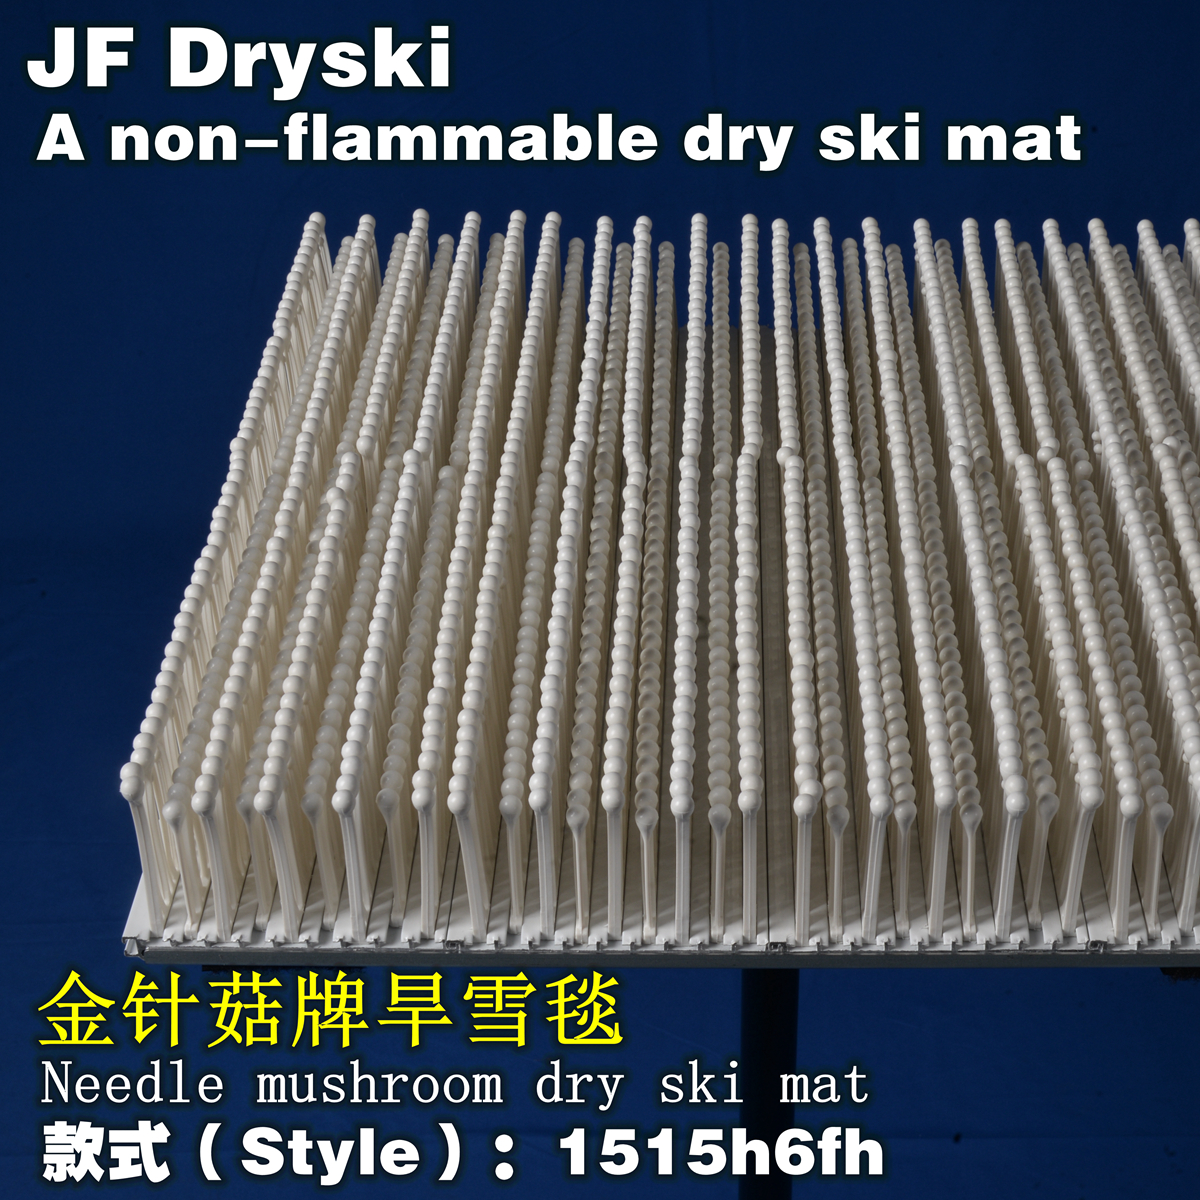 1515h6fh 4-level JF DRYSKI mushroom dry ski mat for Fire prevention